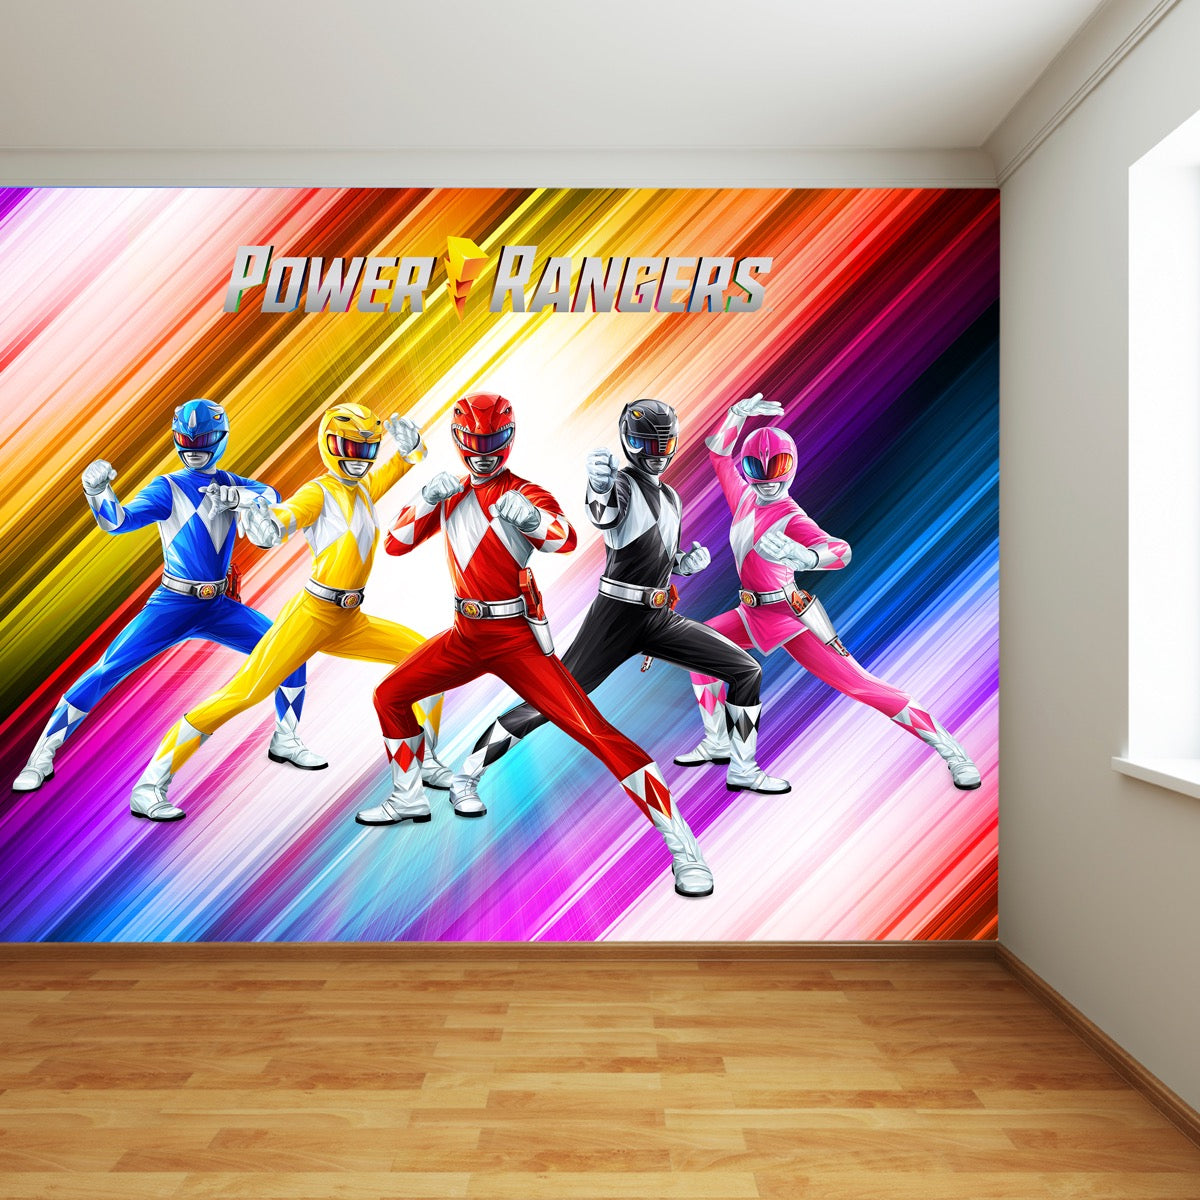 Power Rangers Group Full Wall Mural